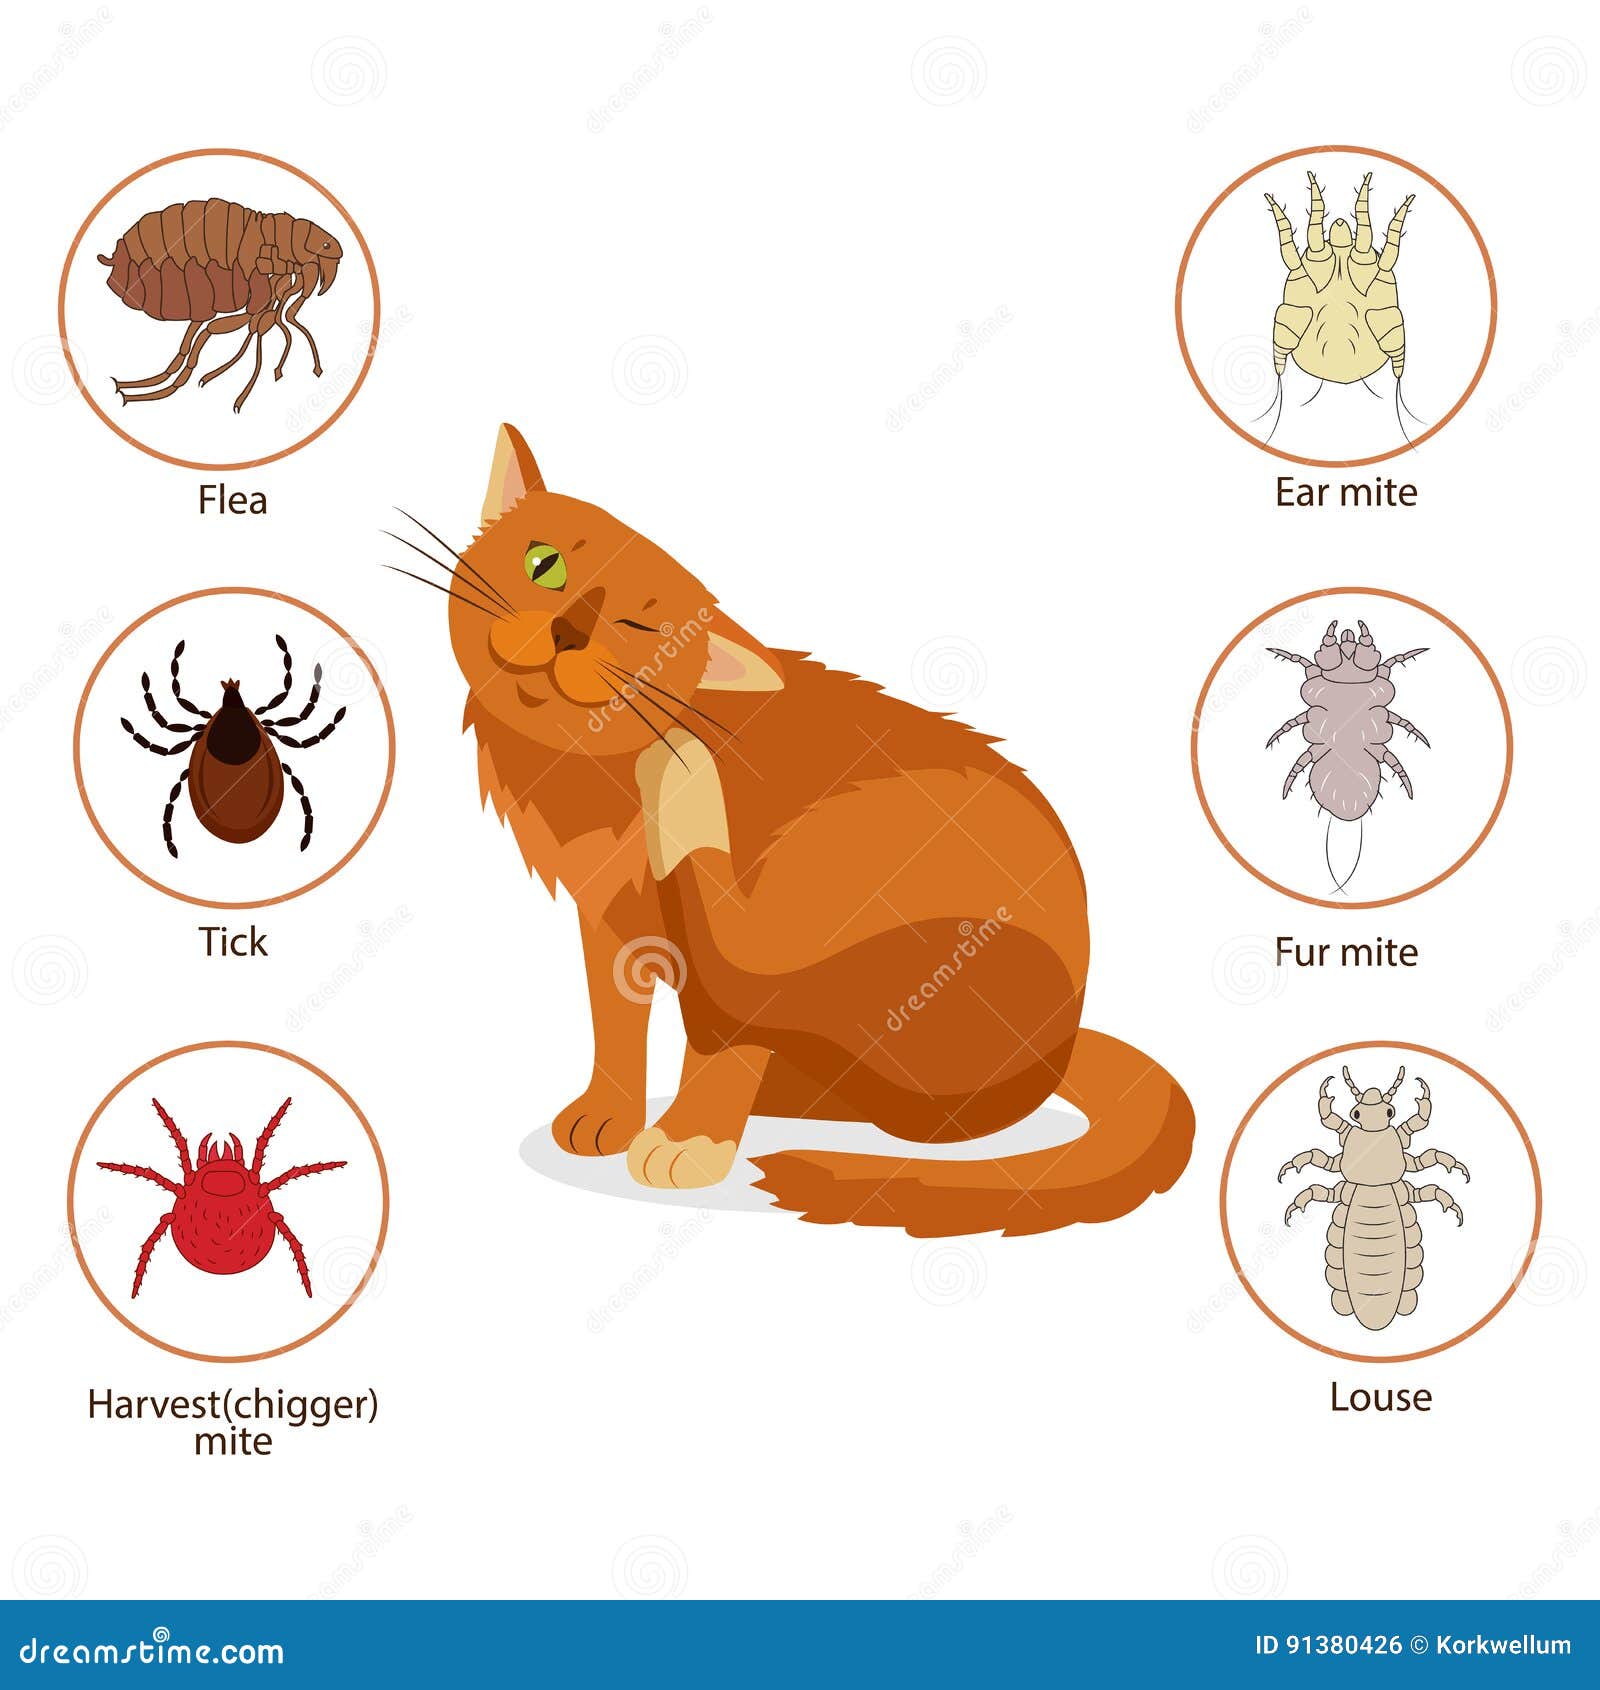 cat parasites. what to know about feline parasites. pet skin and fur parasites . flea, tick, ear mite, fur mite, harvest mit